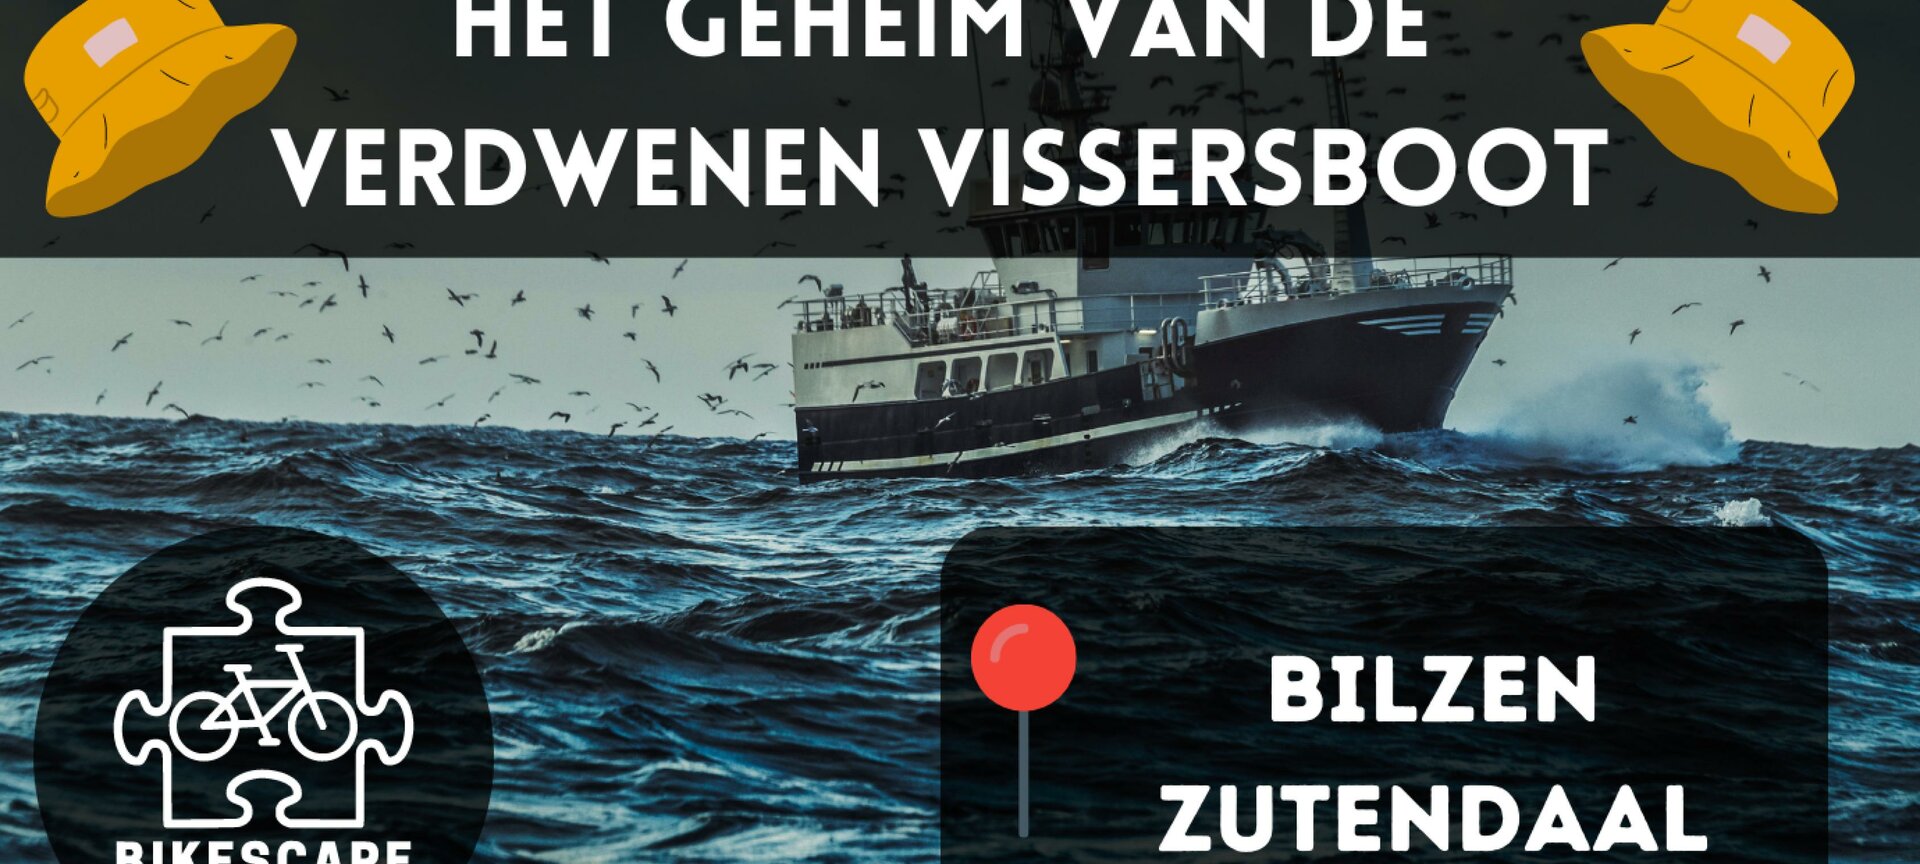 Escape Fietstocht - Het Geheim Van De Verdwenen Vissersboot - Bilzen/Zutendaal - Het Geheim Van De Verdwenen Vissersboot - Bilzen/Zutendaal